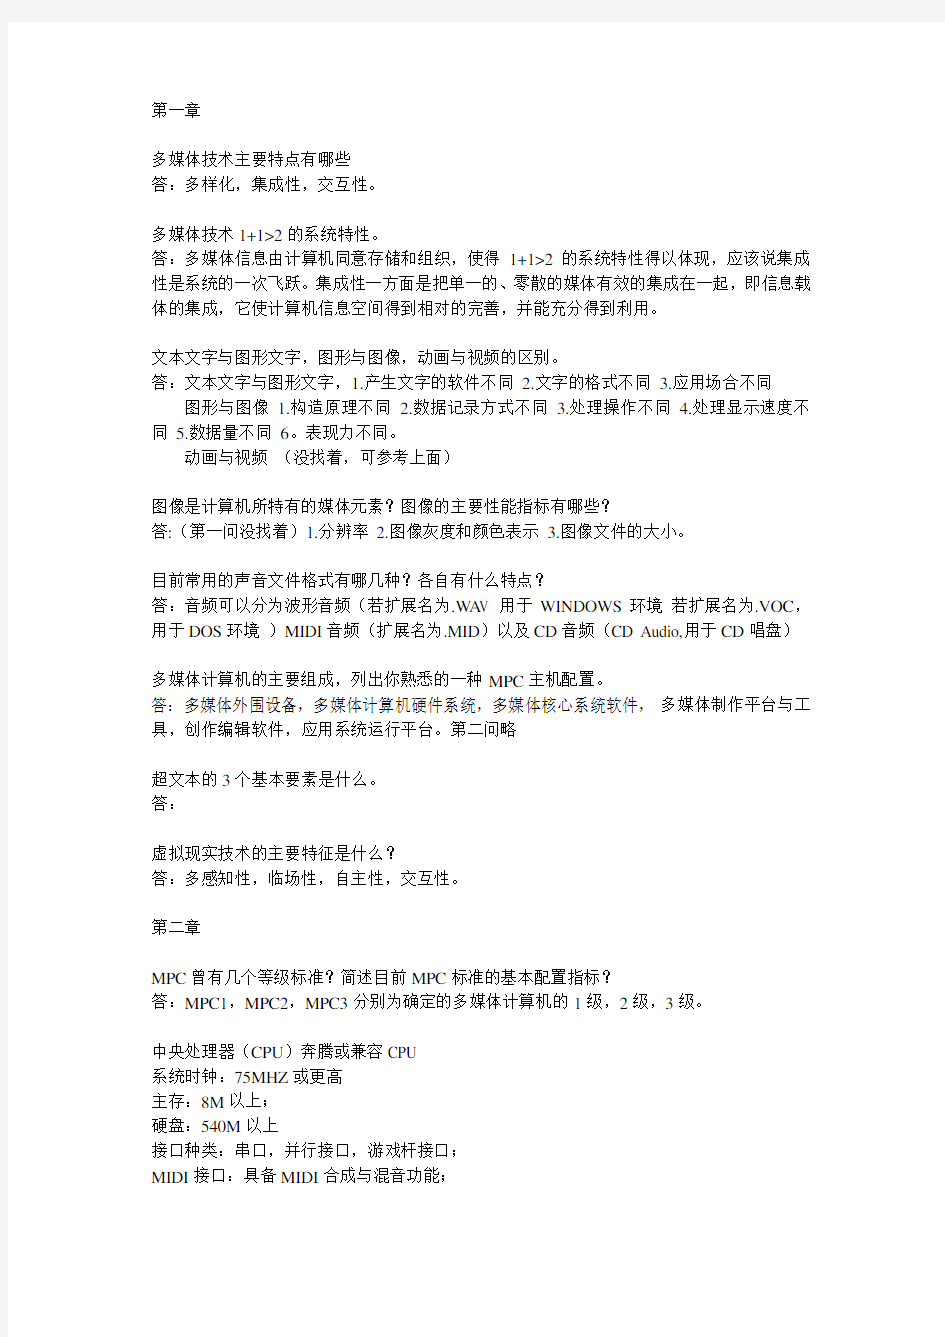 多媒体应用基础(第三版第四版)刘甘娜 自学考试代码07871 课后题答案自整理